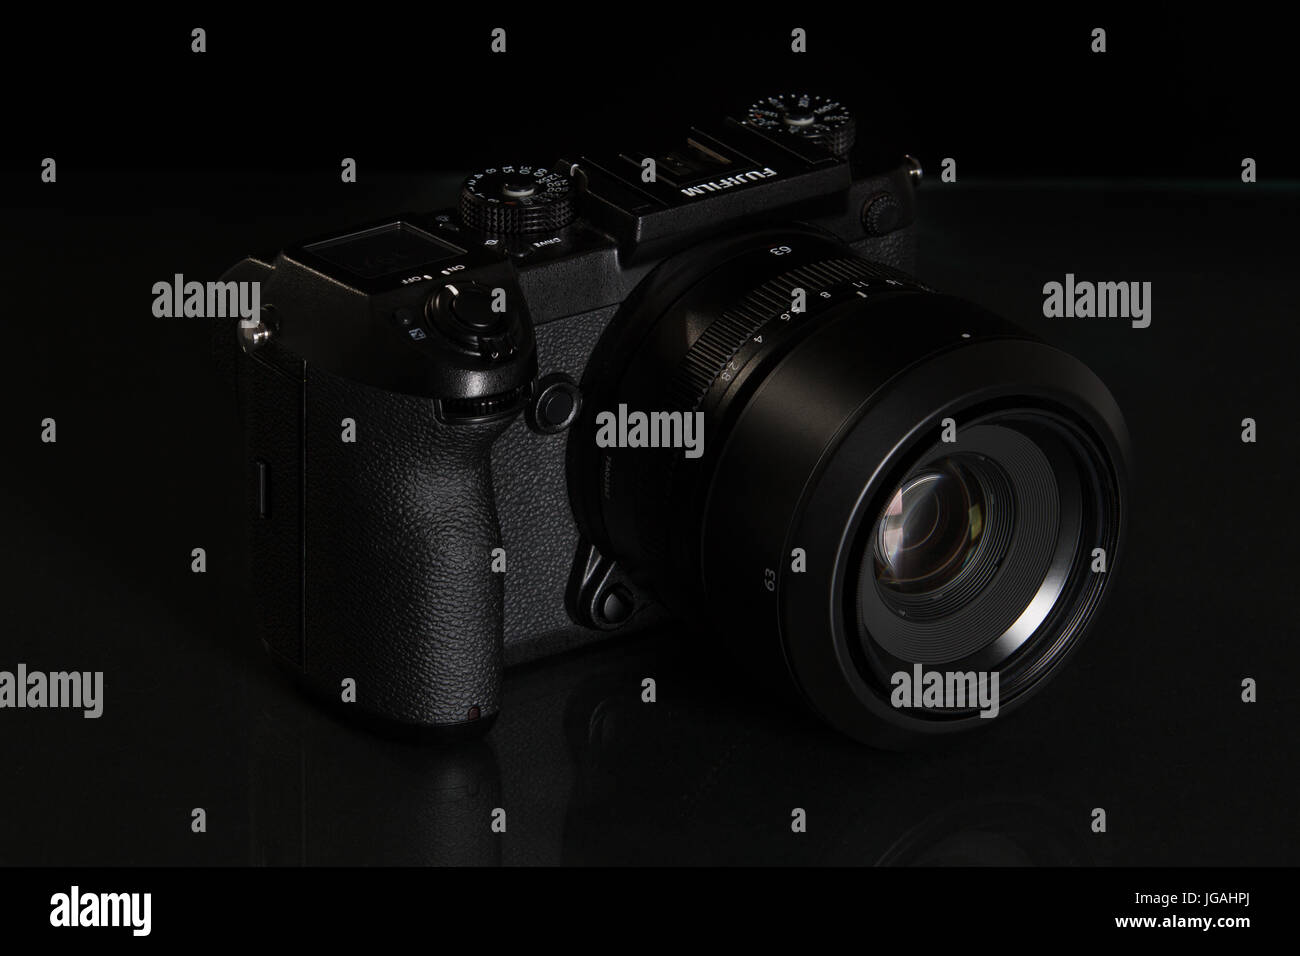 Fujifilm GFX 50er, 51 Megapixel, Sensor digitale Mittelformatkamera auf schwarzem Hintergrund reflektiert Stockfoto